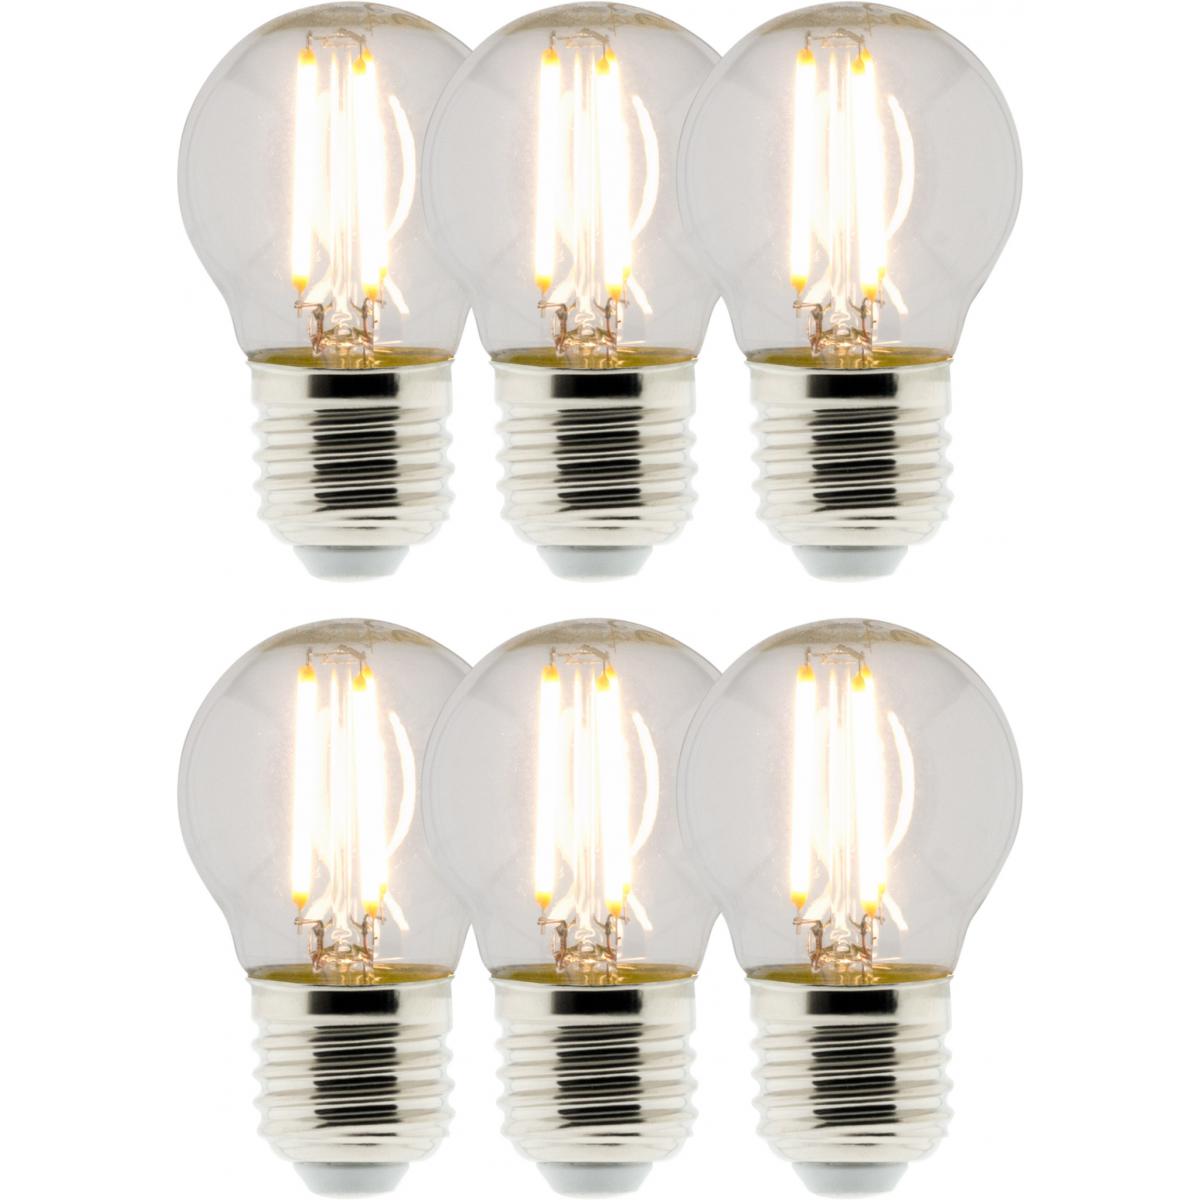 Elexity - Lot de 6 Ampoules Déco filament LED Sphérique 4W E27 470lm 2700K - Ampoules LED